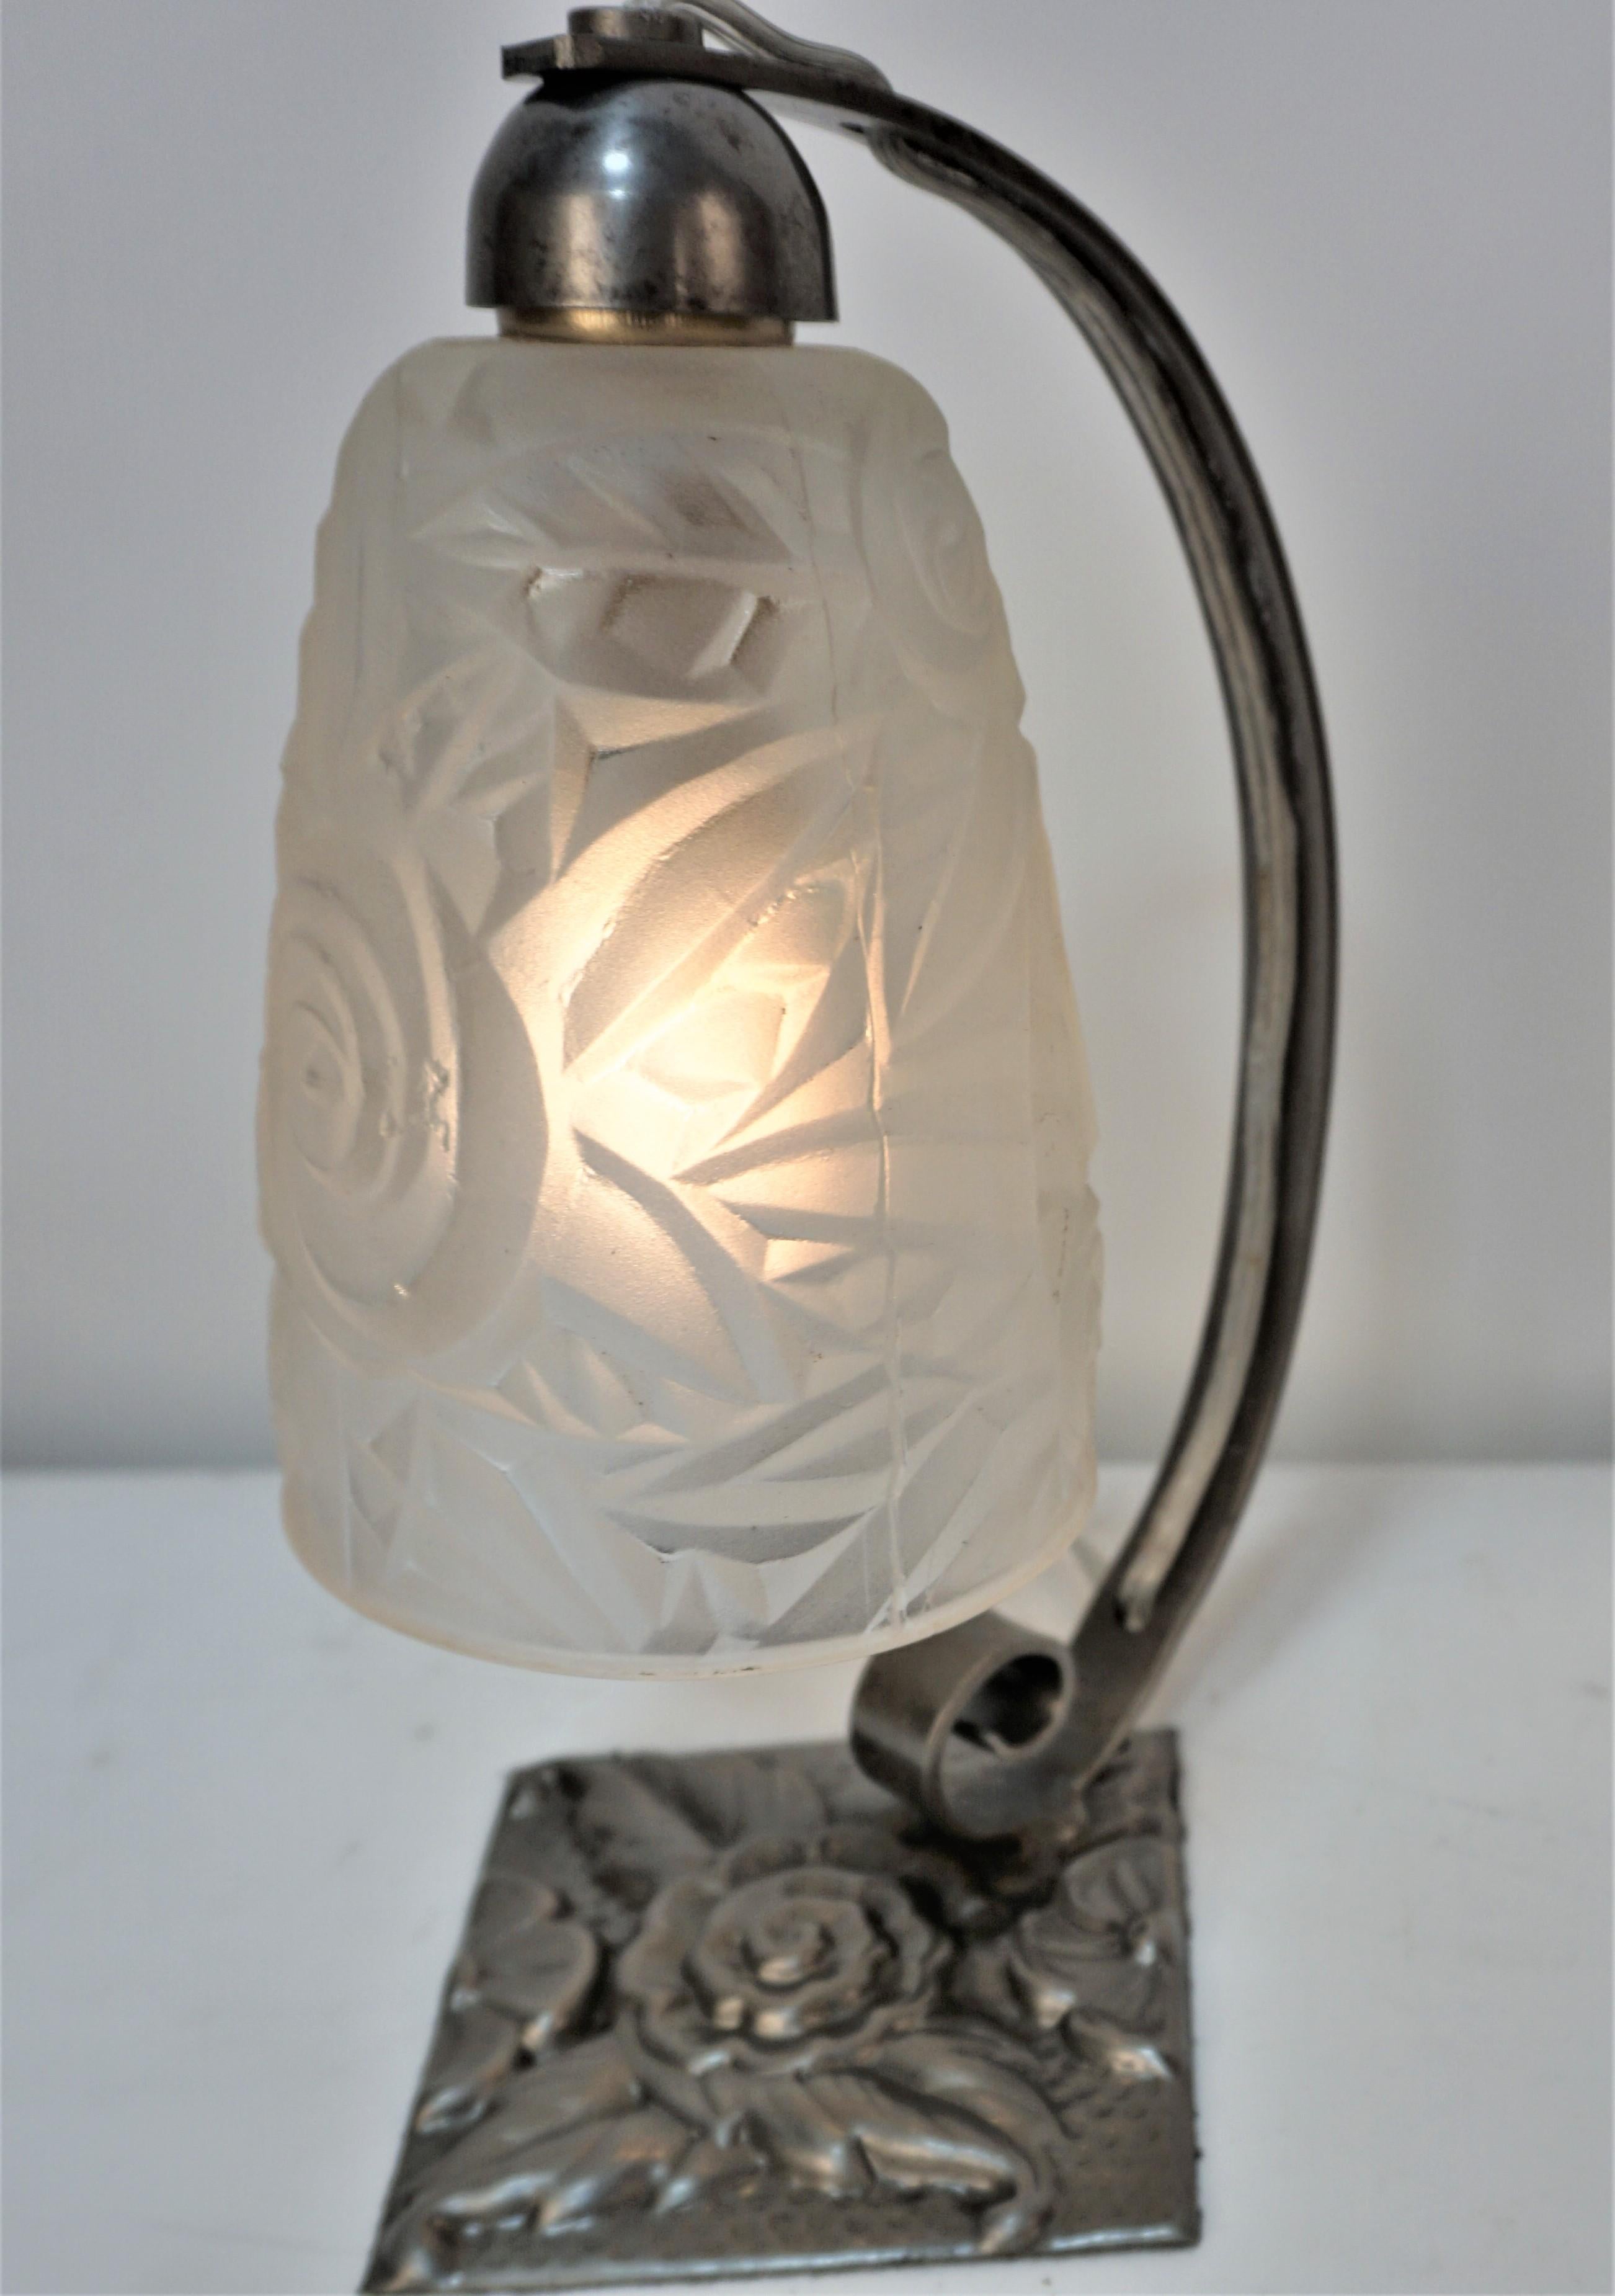  Art-Déco-Tischlampe aus Eisblumenglas von Jean Noverdy (Dijon), Frankreich, 1920.
Der Sockel ist aus Eisen handgefertigt,
 